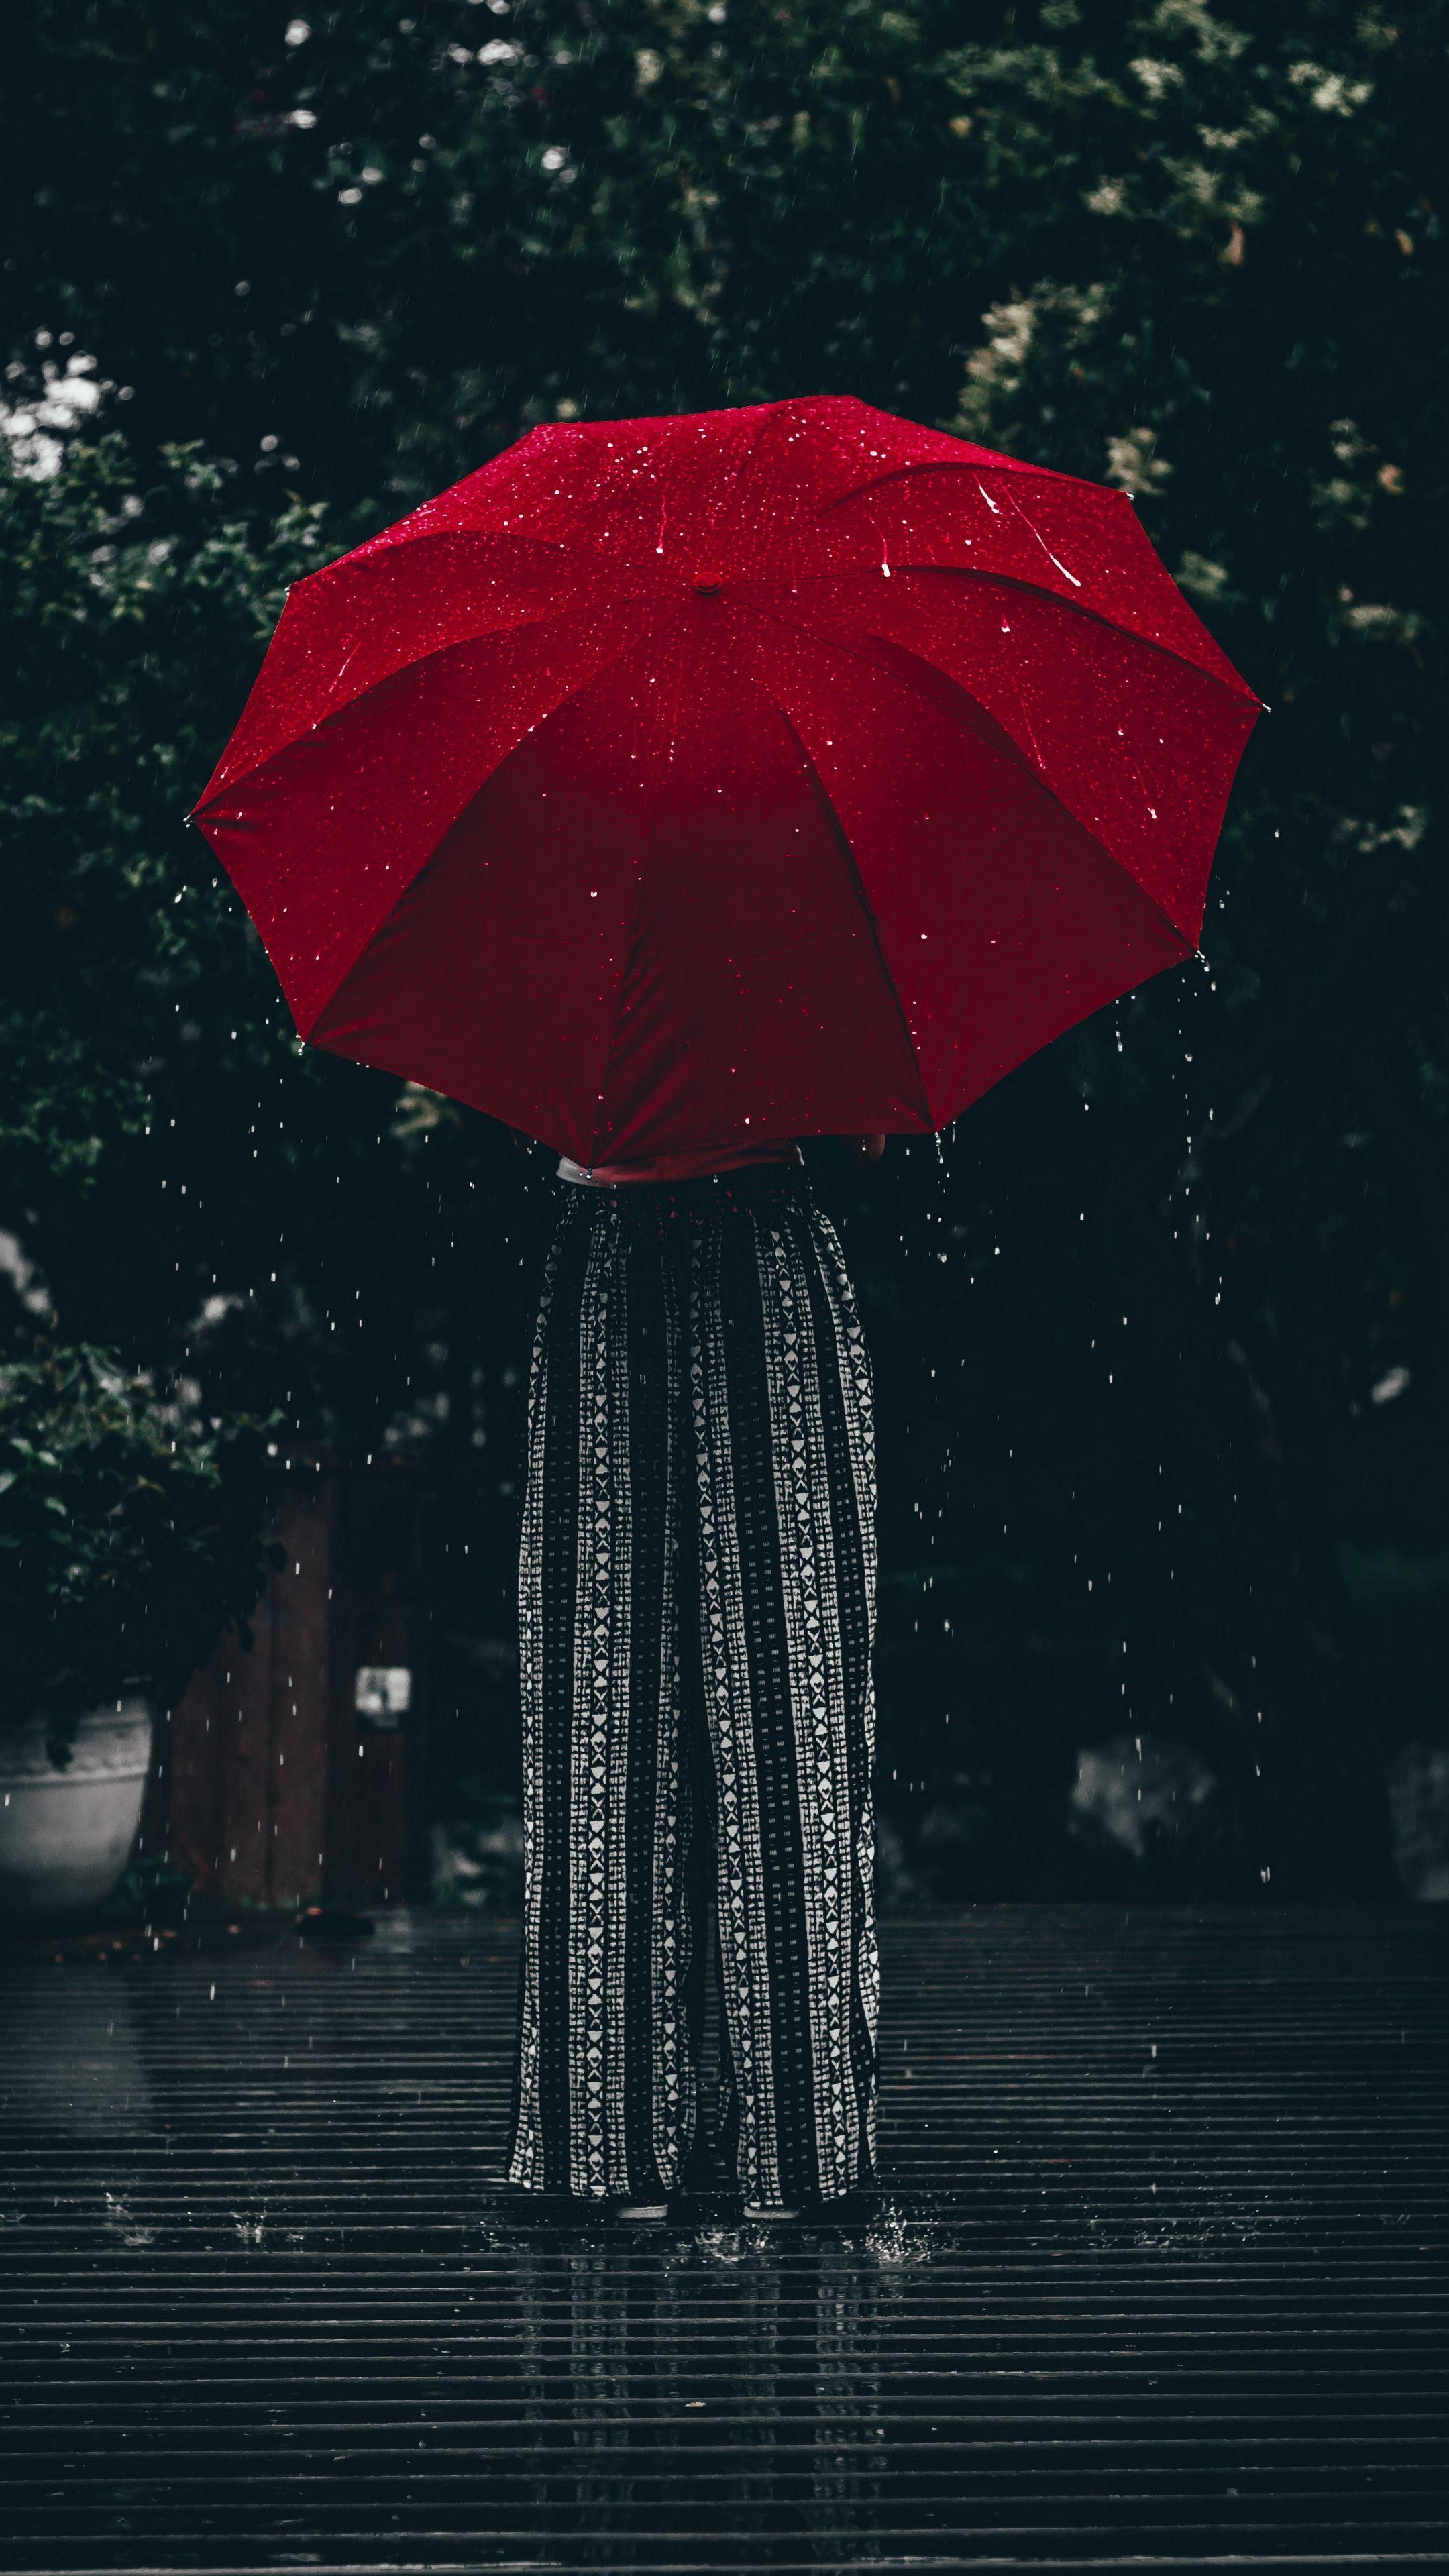 Rainy Umbrella Wallpapers - Top Free Rainy Umbrella Backgrounds ...